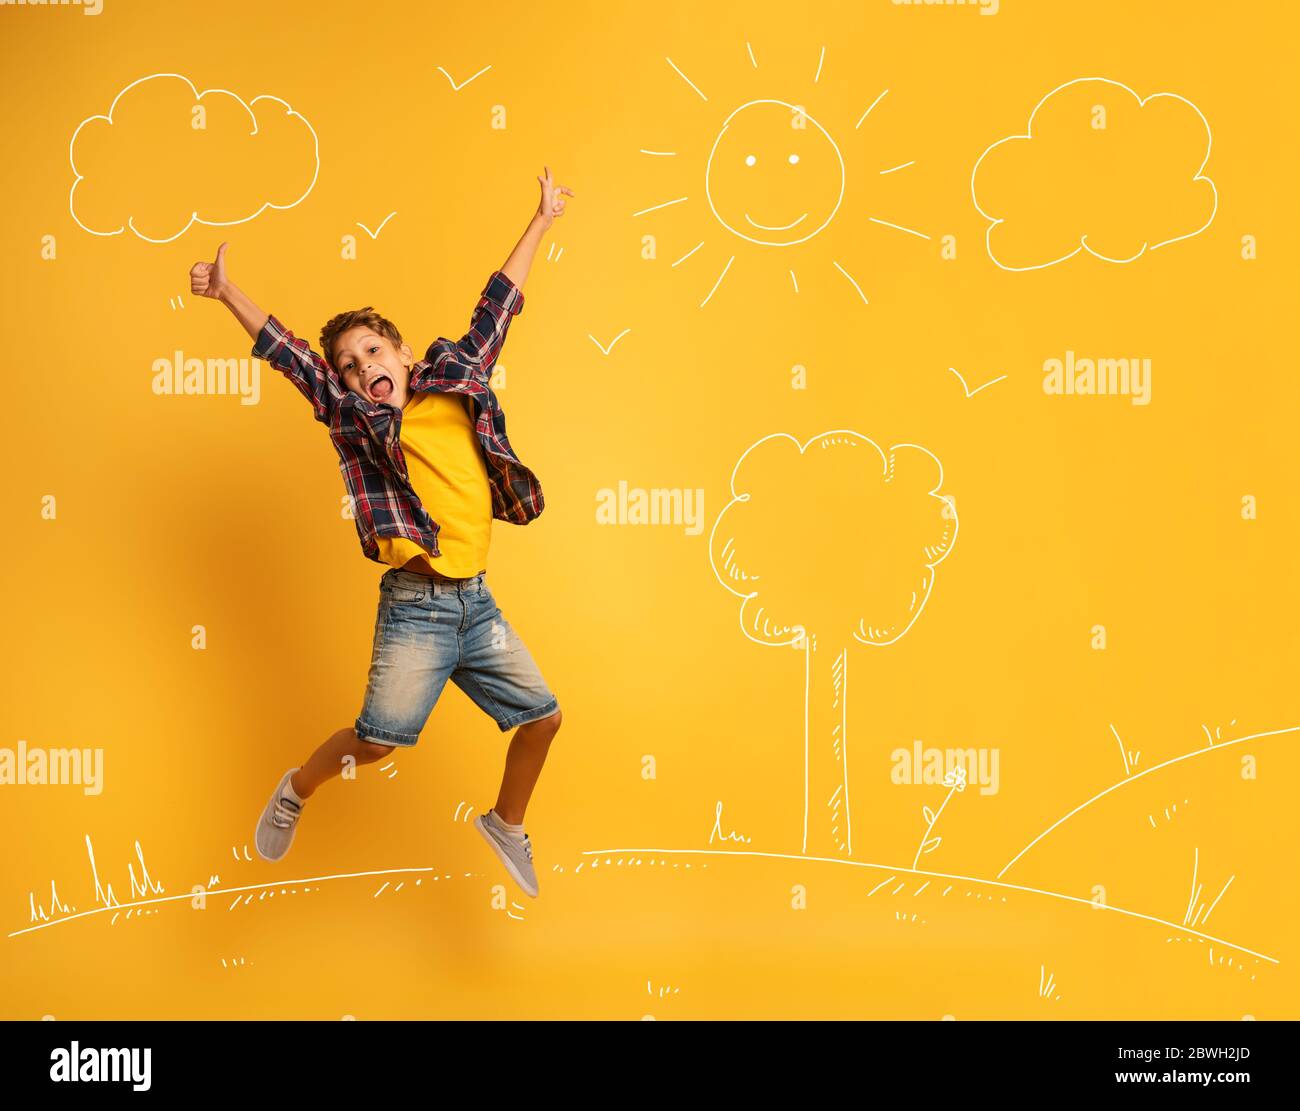 Bambino felice ed emozionale salta sopra uno sfondo giallo. Foto Stock